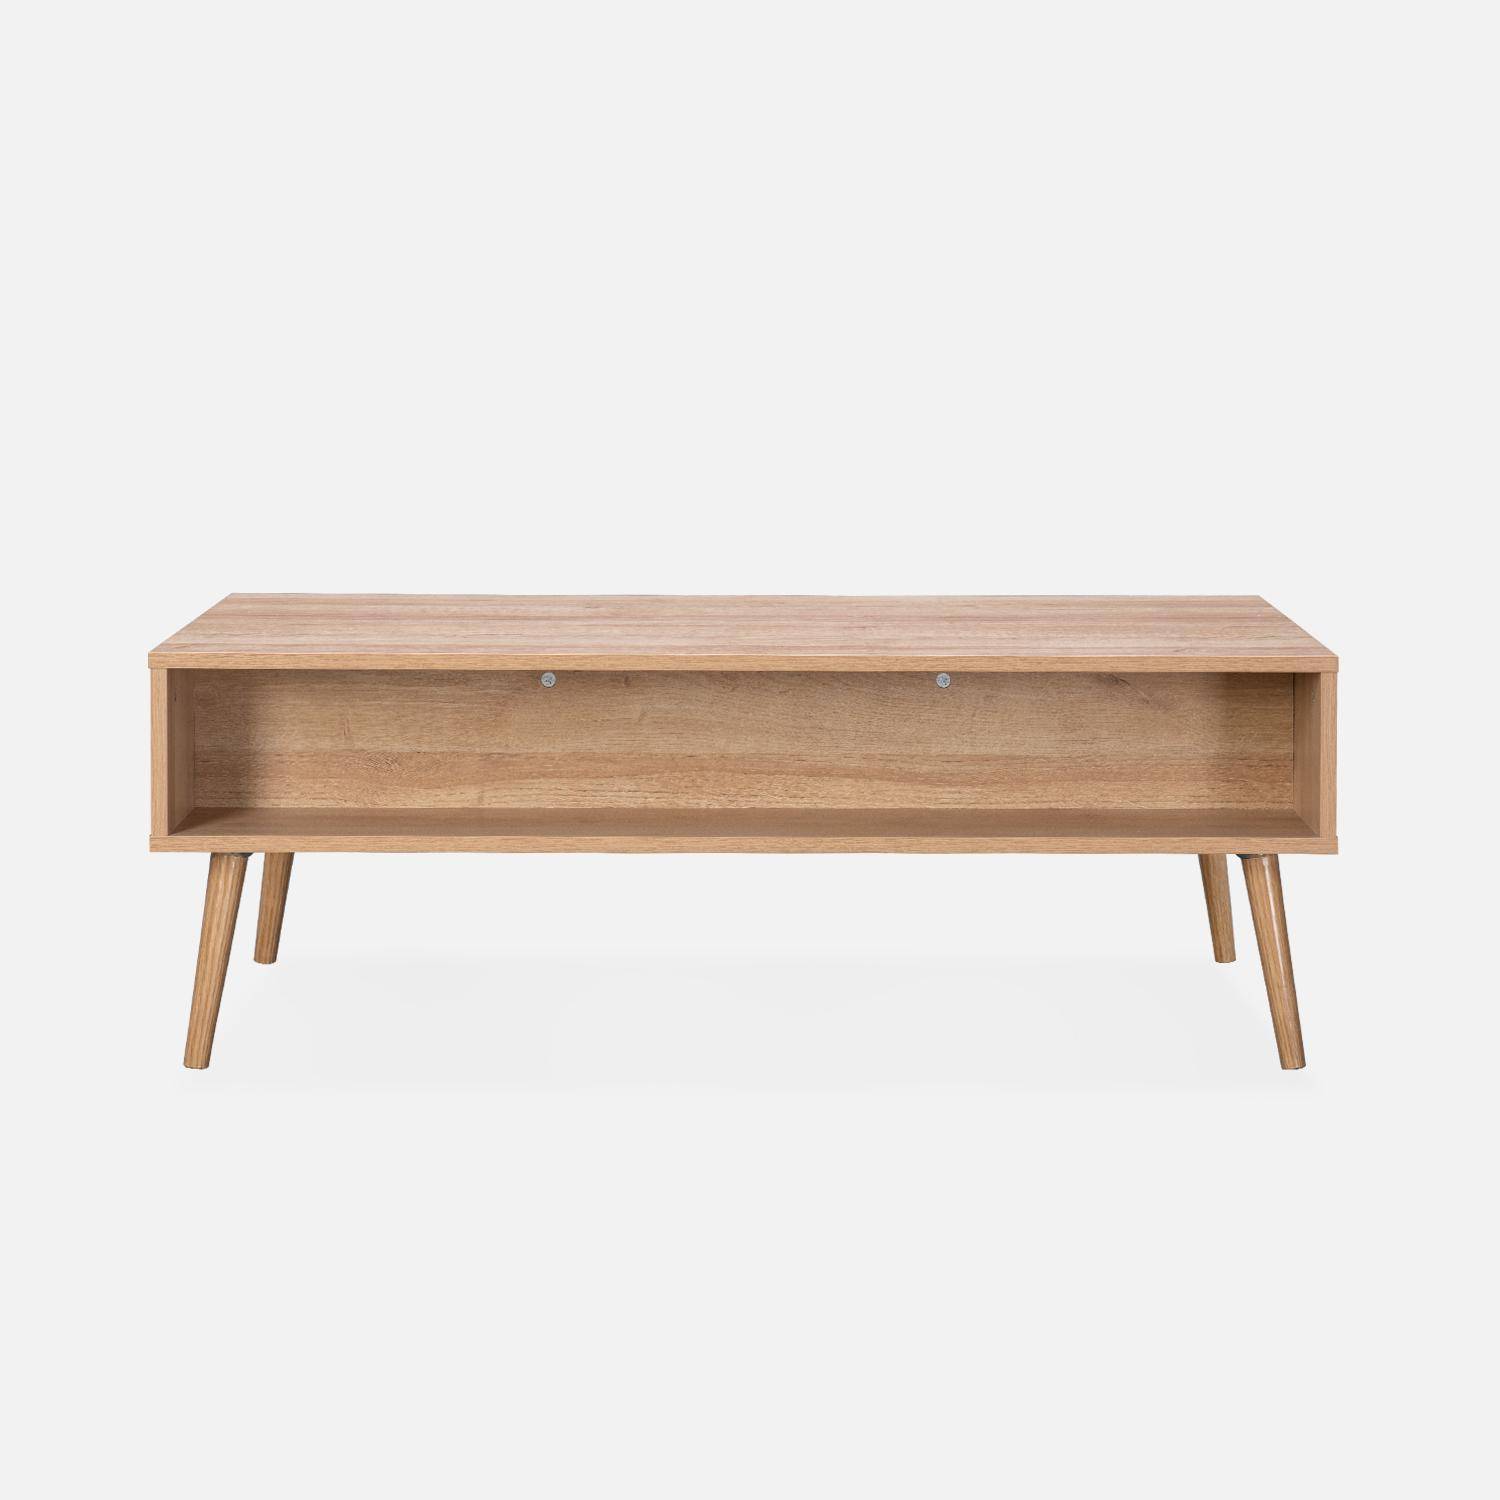 Table basse, Eva,  scandinave en cannage arrondi et en décor bois, 1 tiroir réversible L110 x l59 x H39cm Photo4